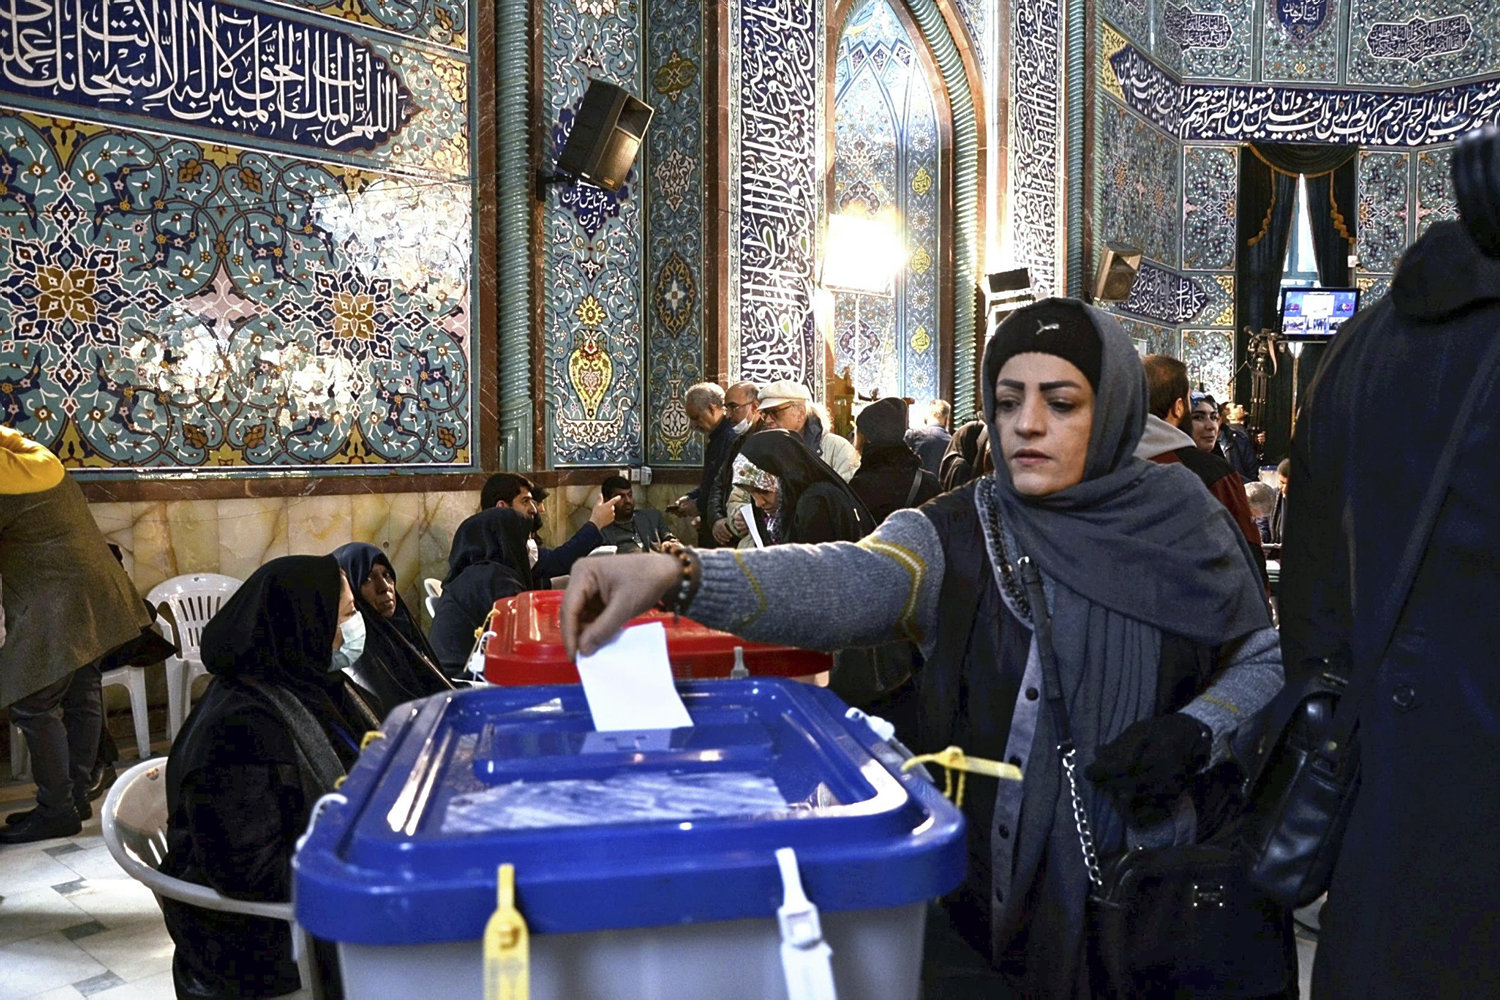 valgdeltagelse i iran ser ud til at sætte bundrekord